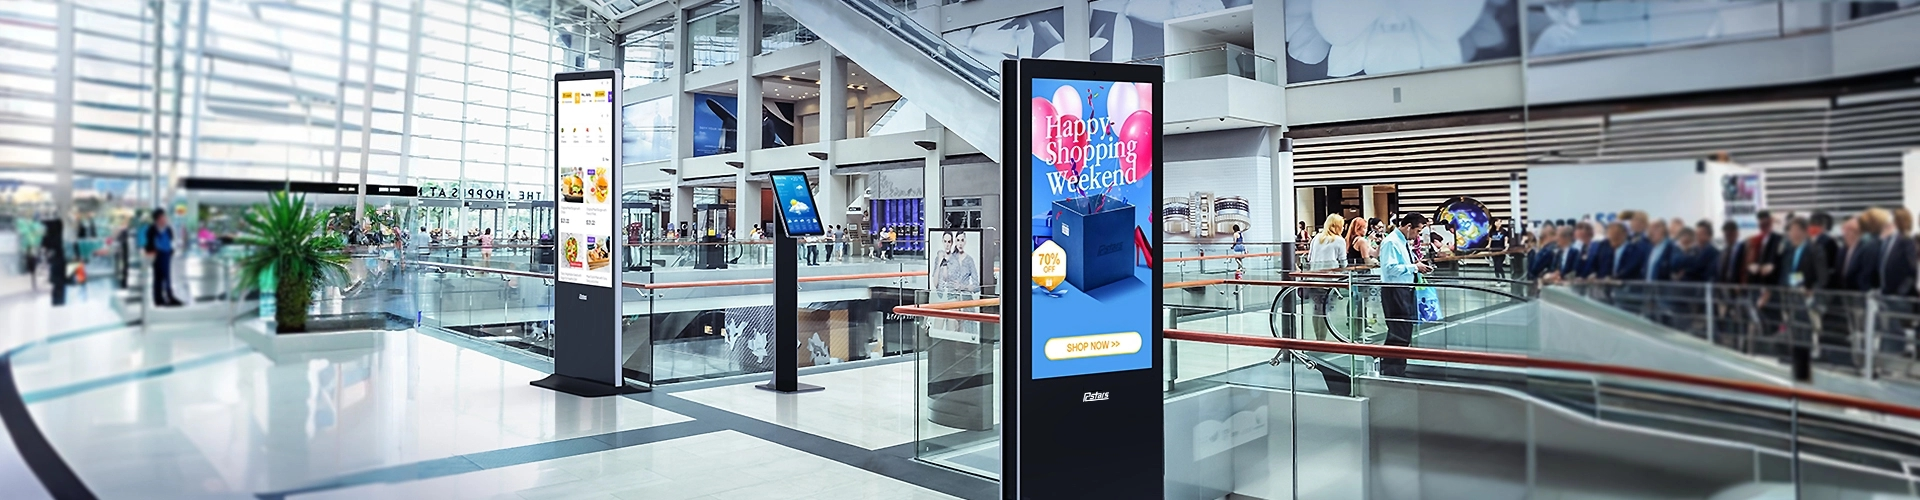 23.8 inch IP65 Waterproof Display Interactive Self-service Kiosk in Outdoor